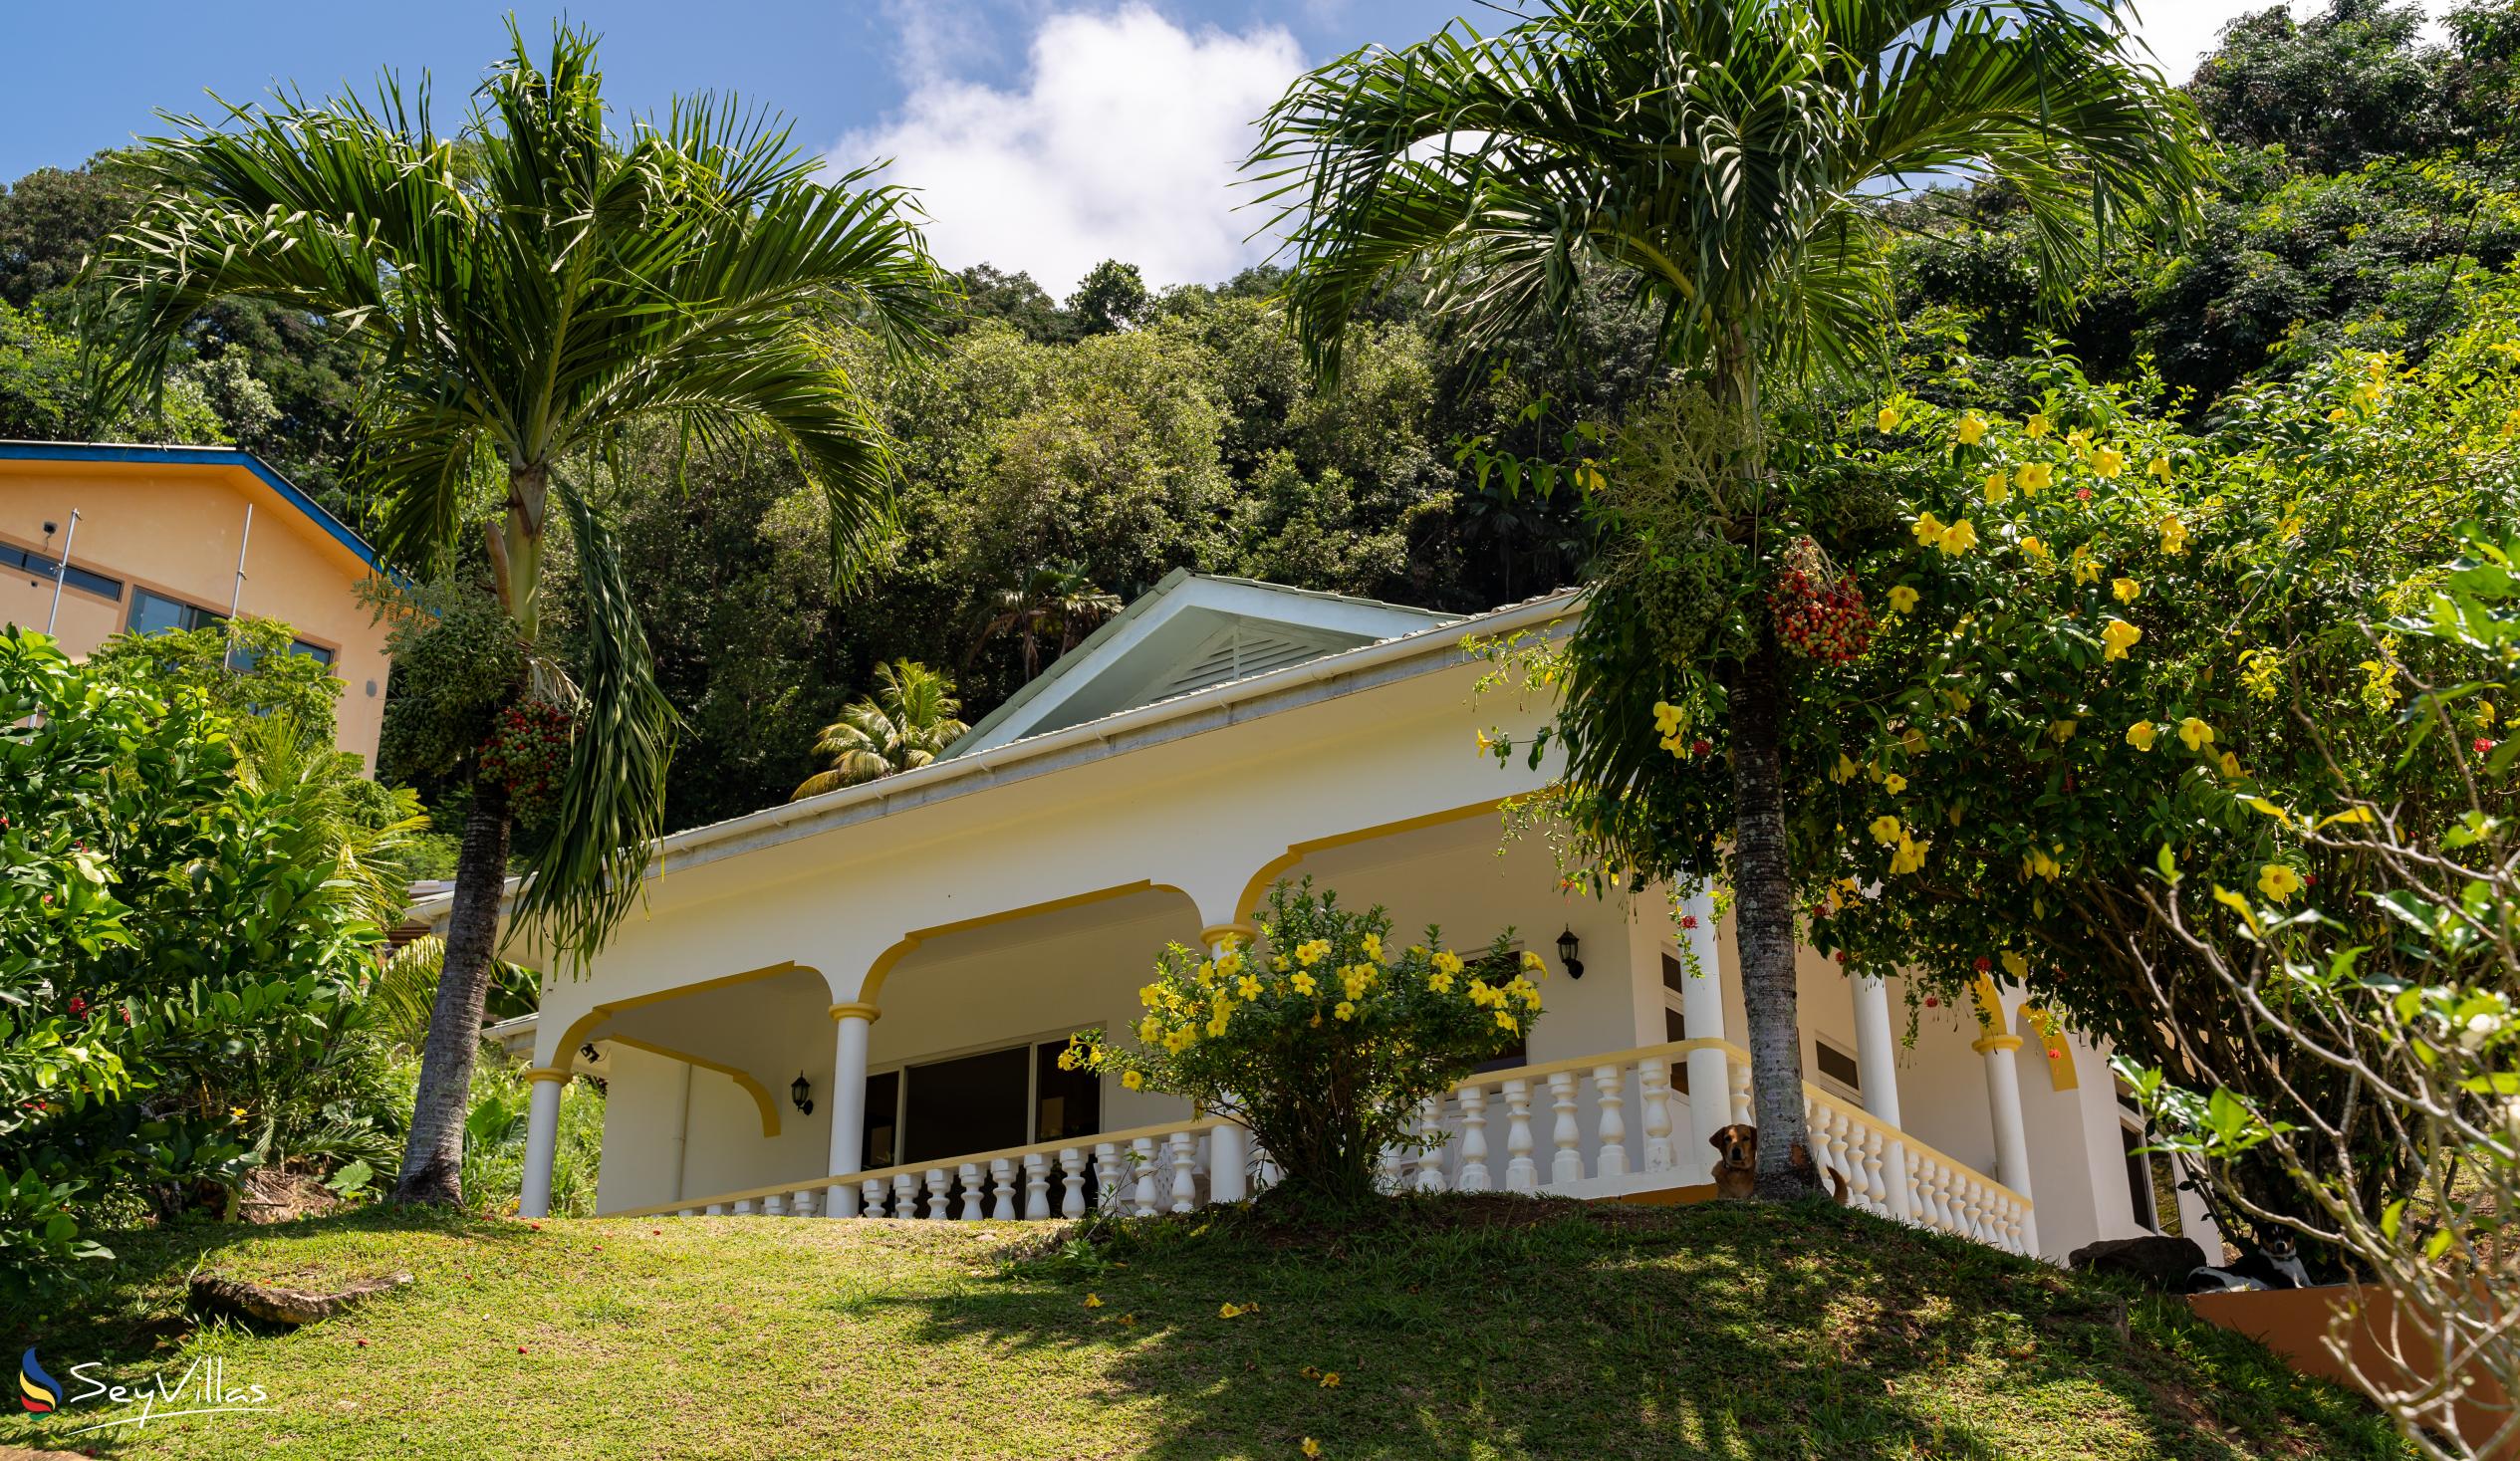 Foto 19: Maison Marikel - Aussenbereich - Mahé (Seychellen)